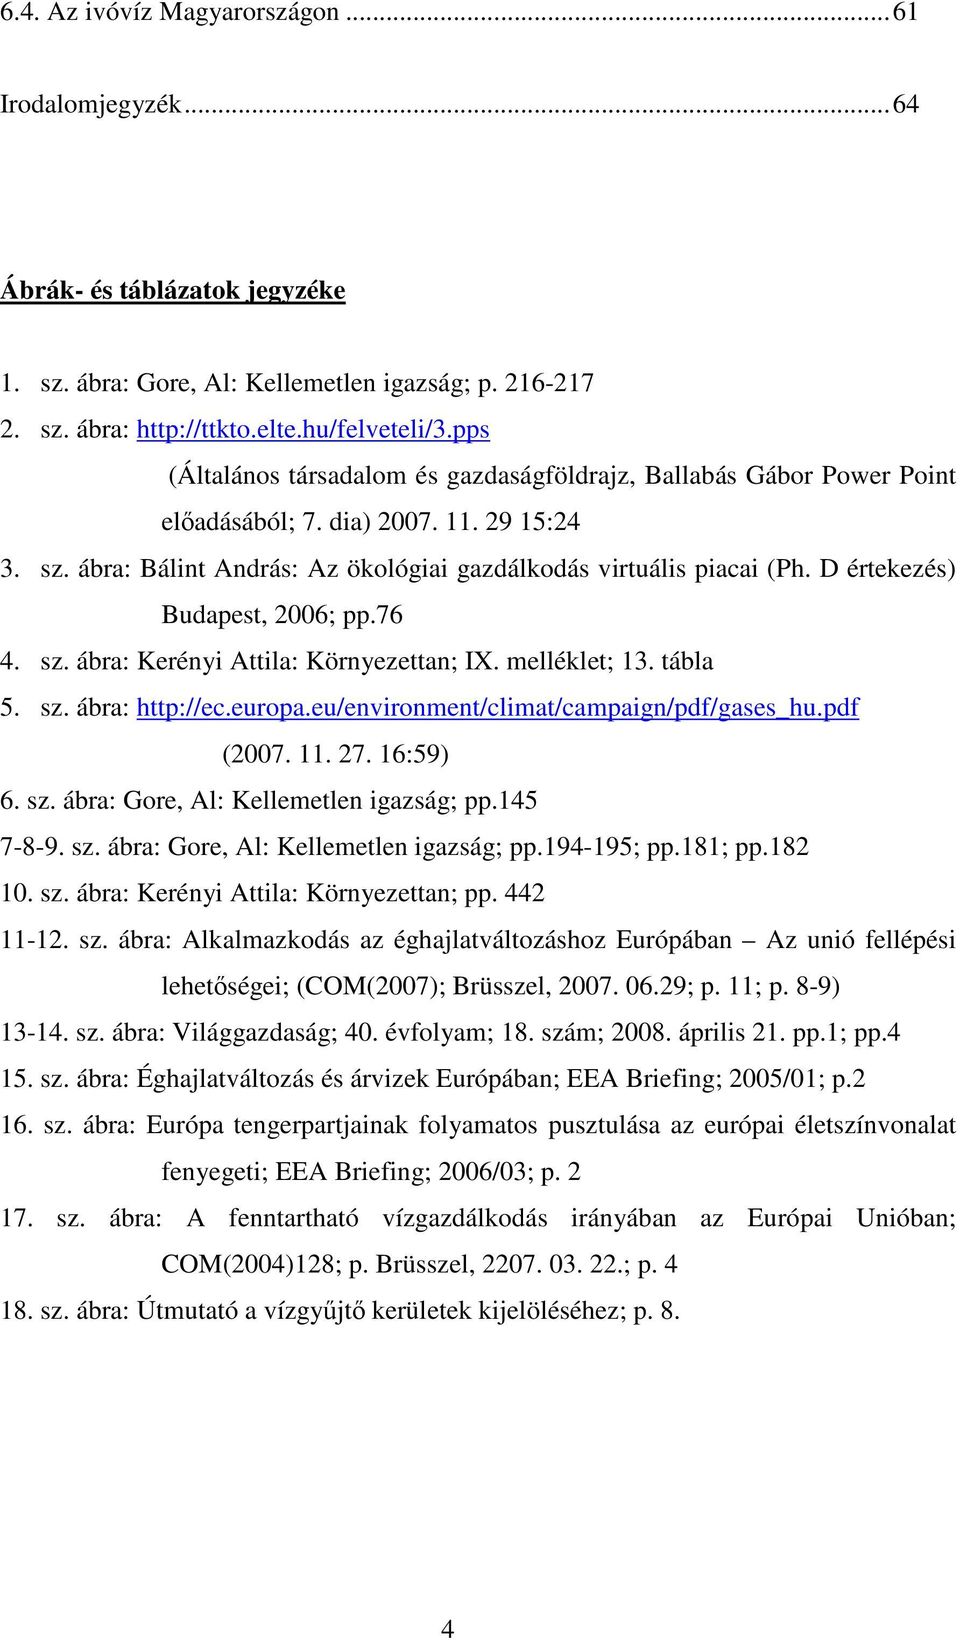 D értekezés) Budapest, 2006; pp.76 4. sz. ábra: Kerényi Attila: Környezettan; IX. melléklet; 13. tábla 5. sz. ábra: http://ec.europa.eu/environment/climat/campaign/pdf/gases_hu.pdf (2007. 11. 27.